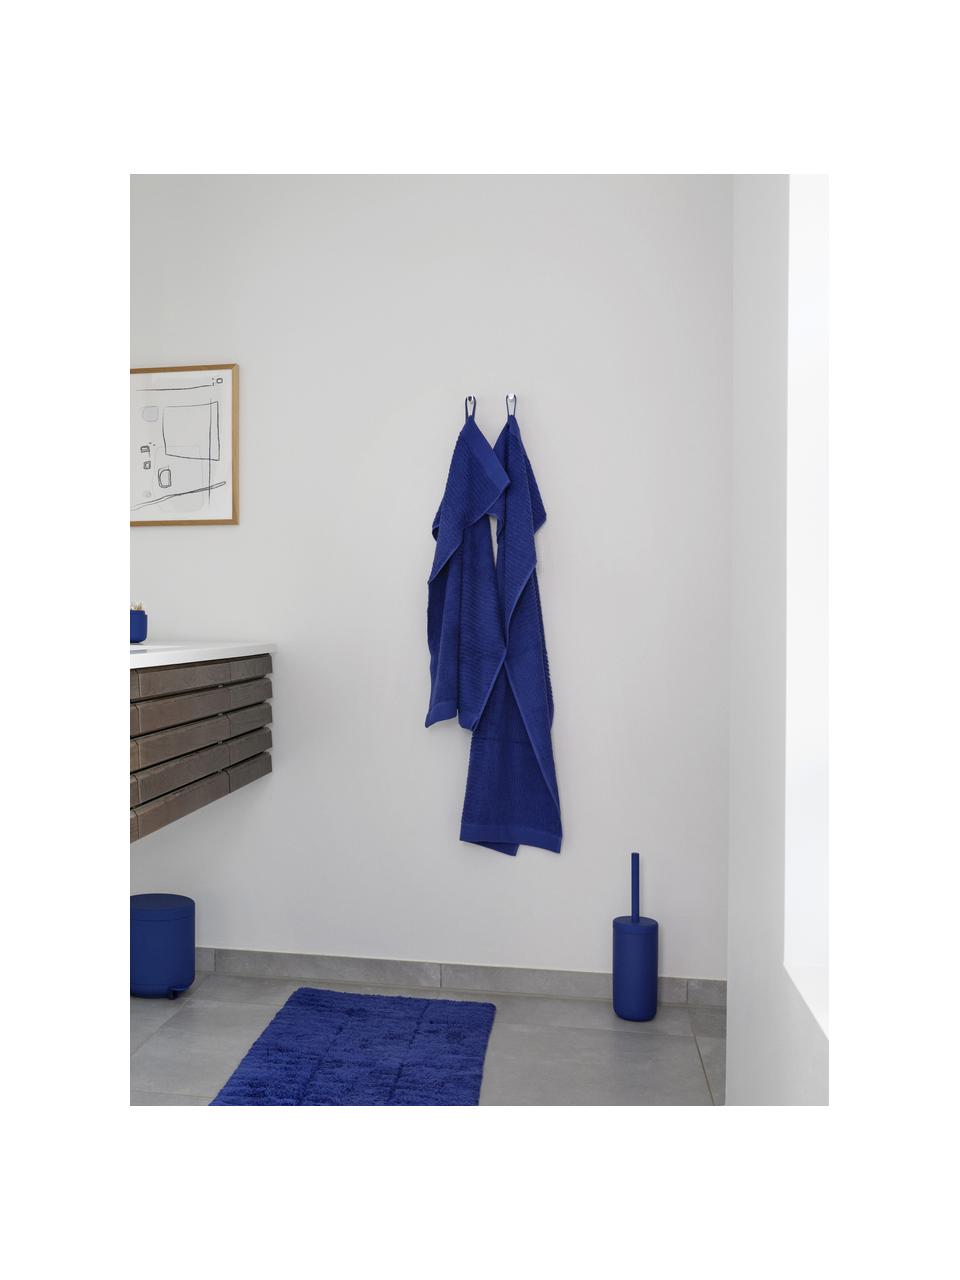 Scopino wc con contenitore in gres Omega, Contenitore: gres con superficie soft-, Manico: plastica, Blu elettrico, Ø 10 x Alt. 39 cm